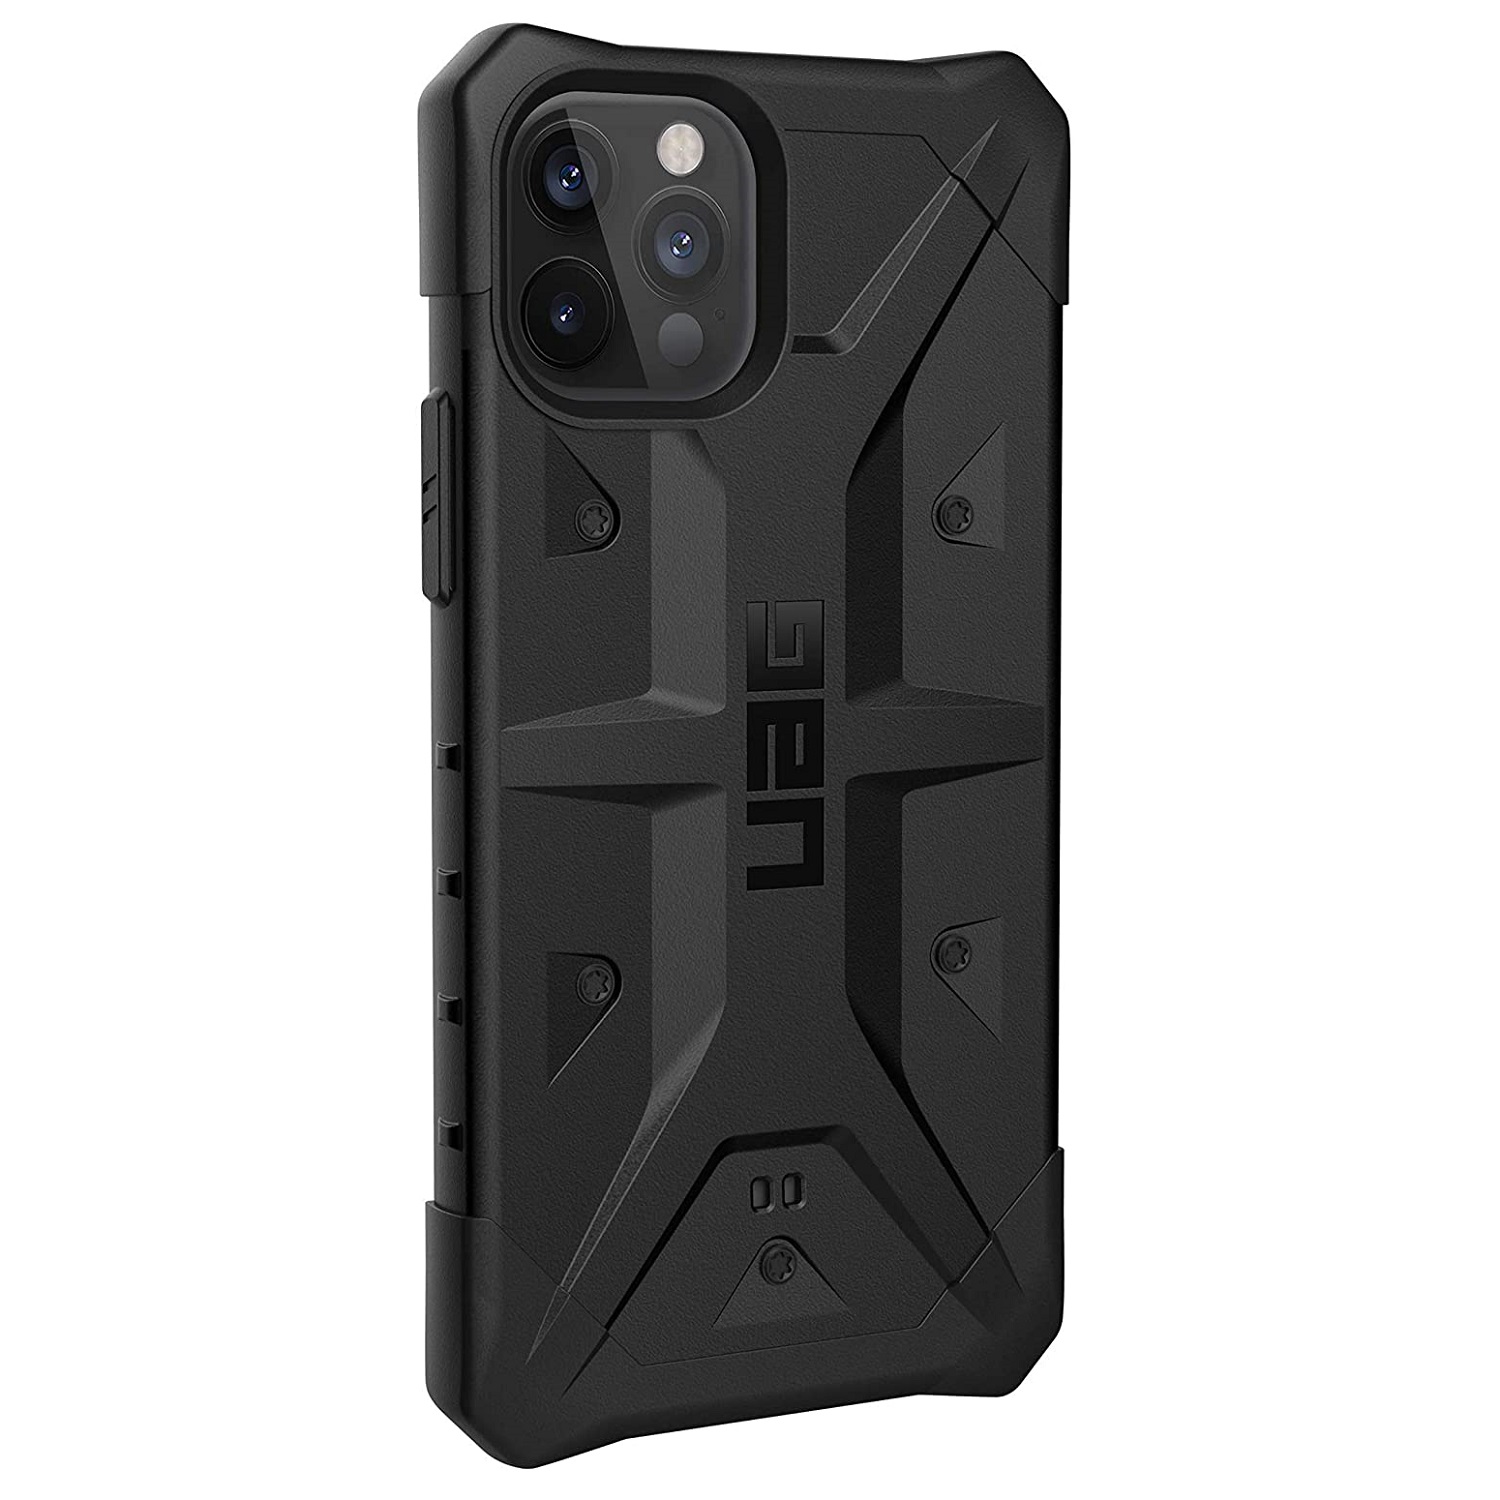 Противоударный защитный чехол UAG Pathfinder Series Case Black для iPhone 12/12 Pro